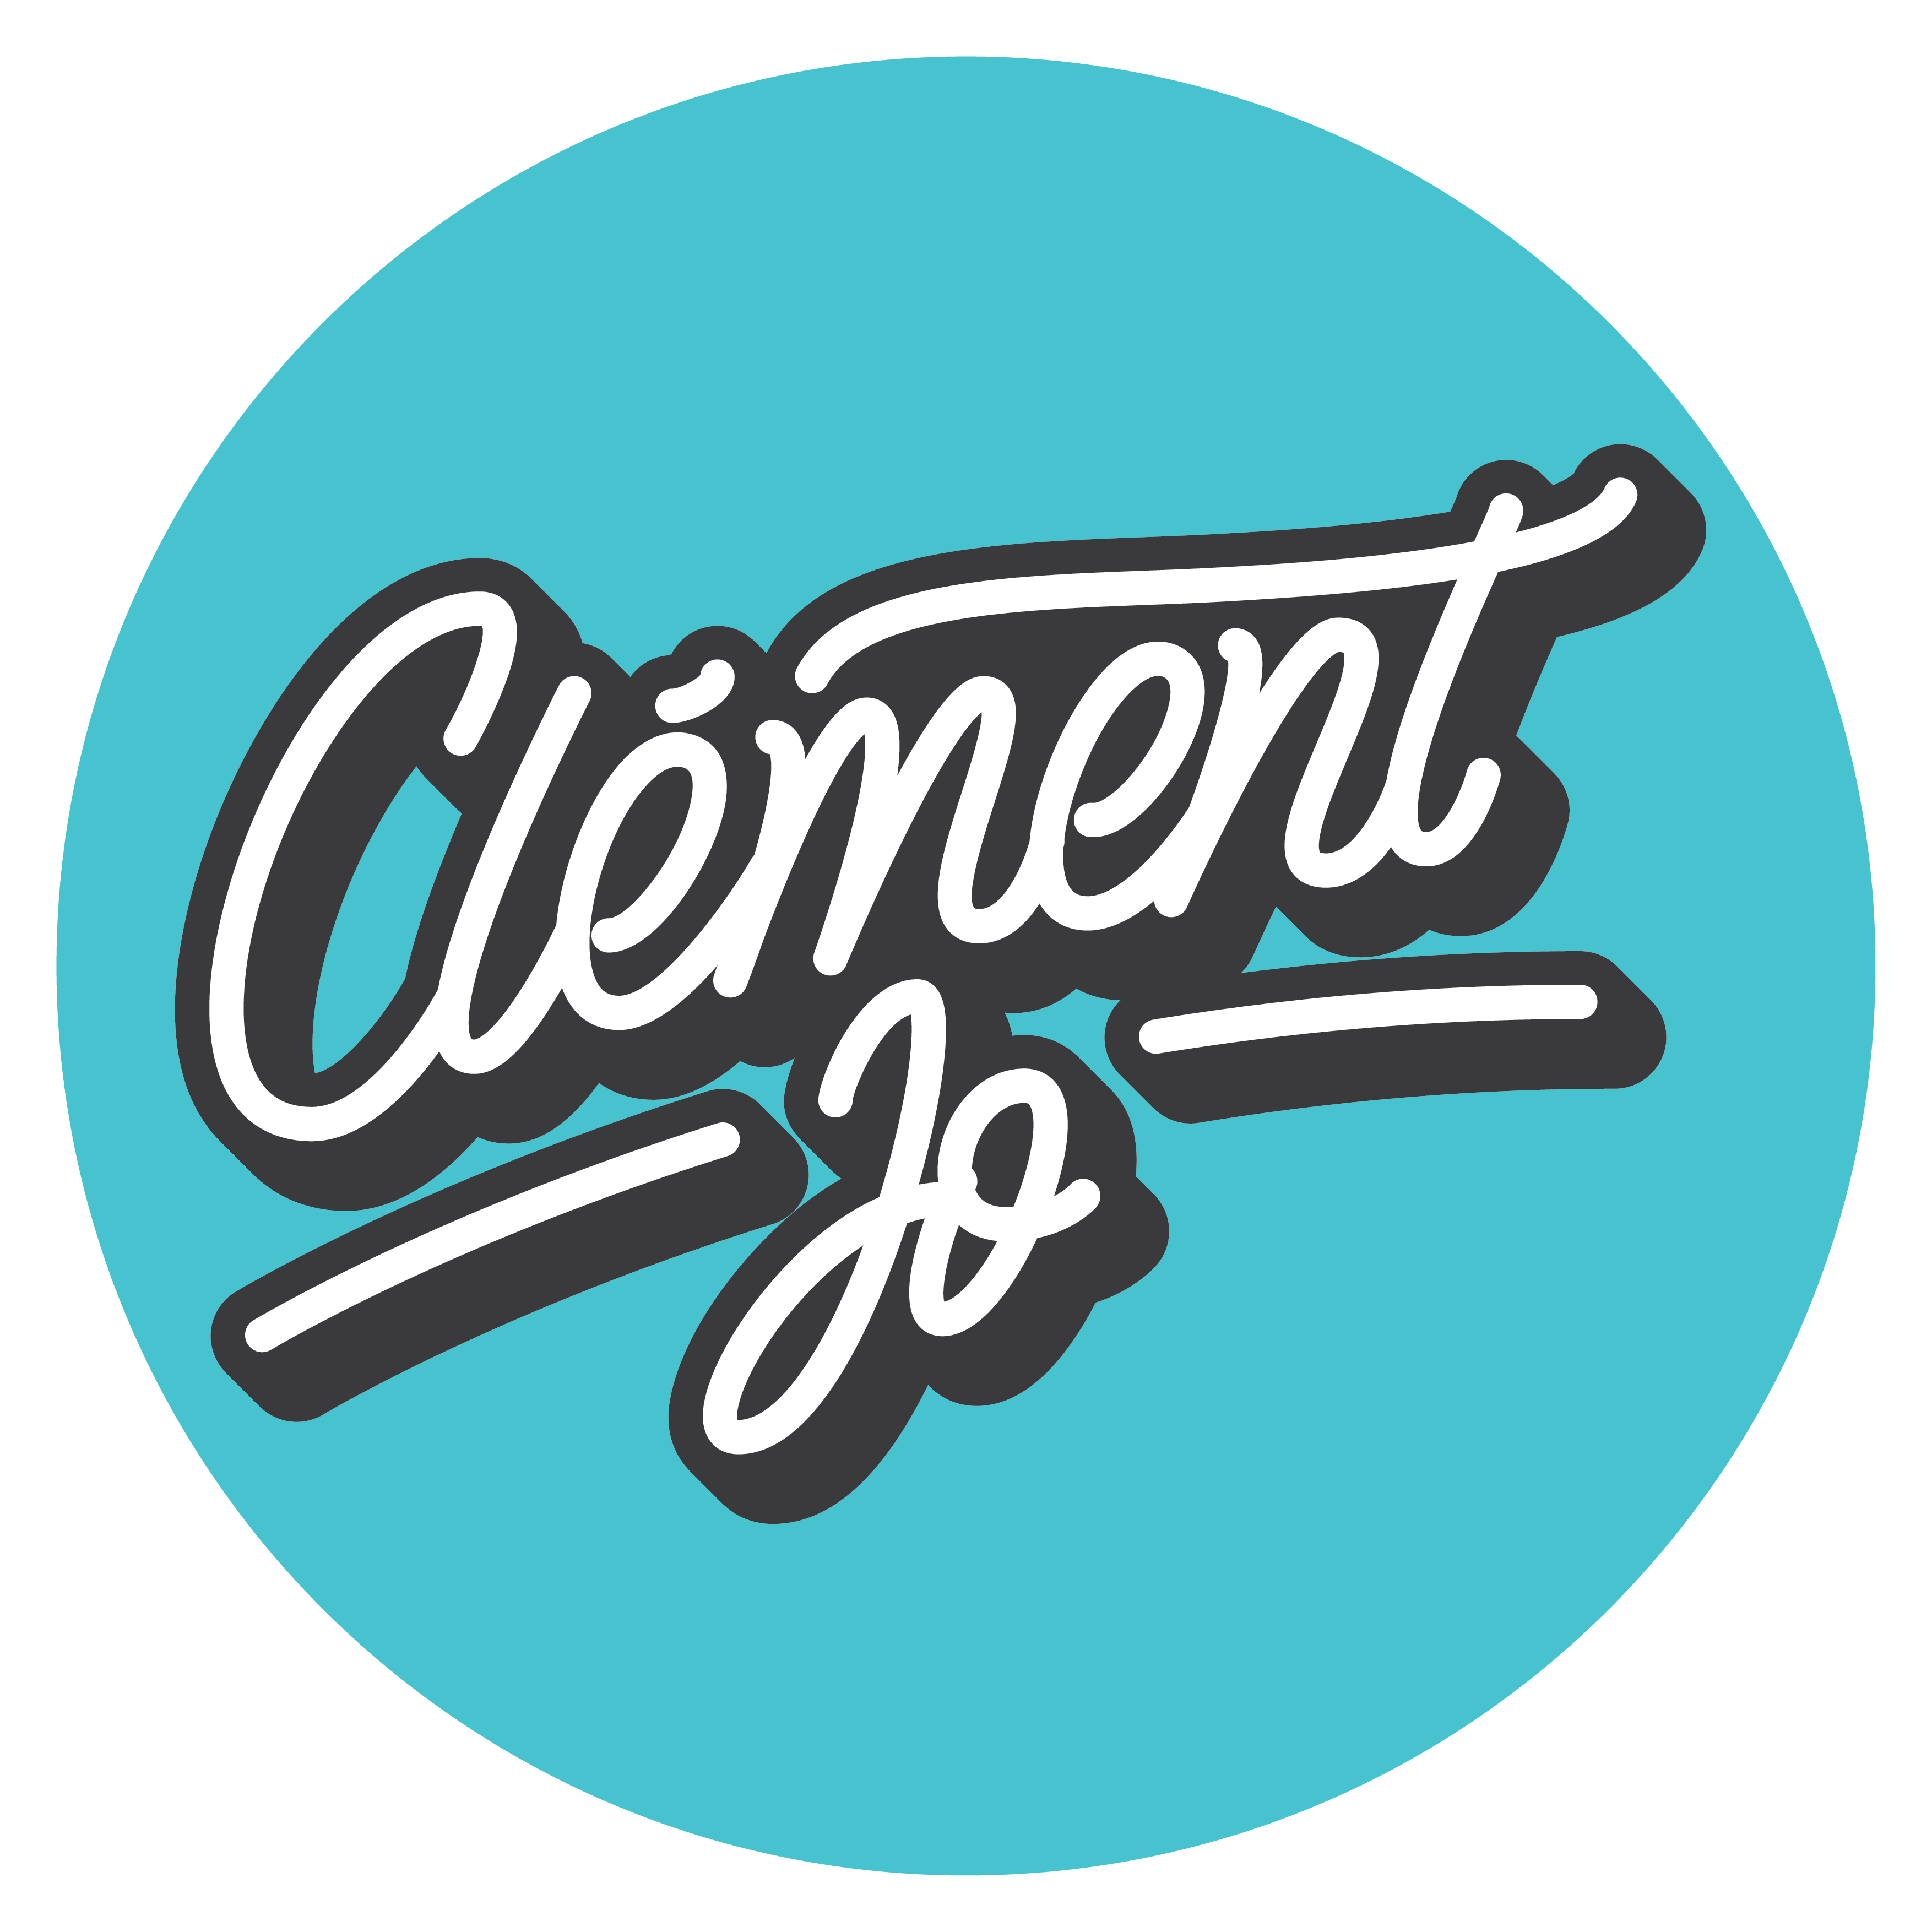 Clément Jo Mathew - Branding | Logo Design